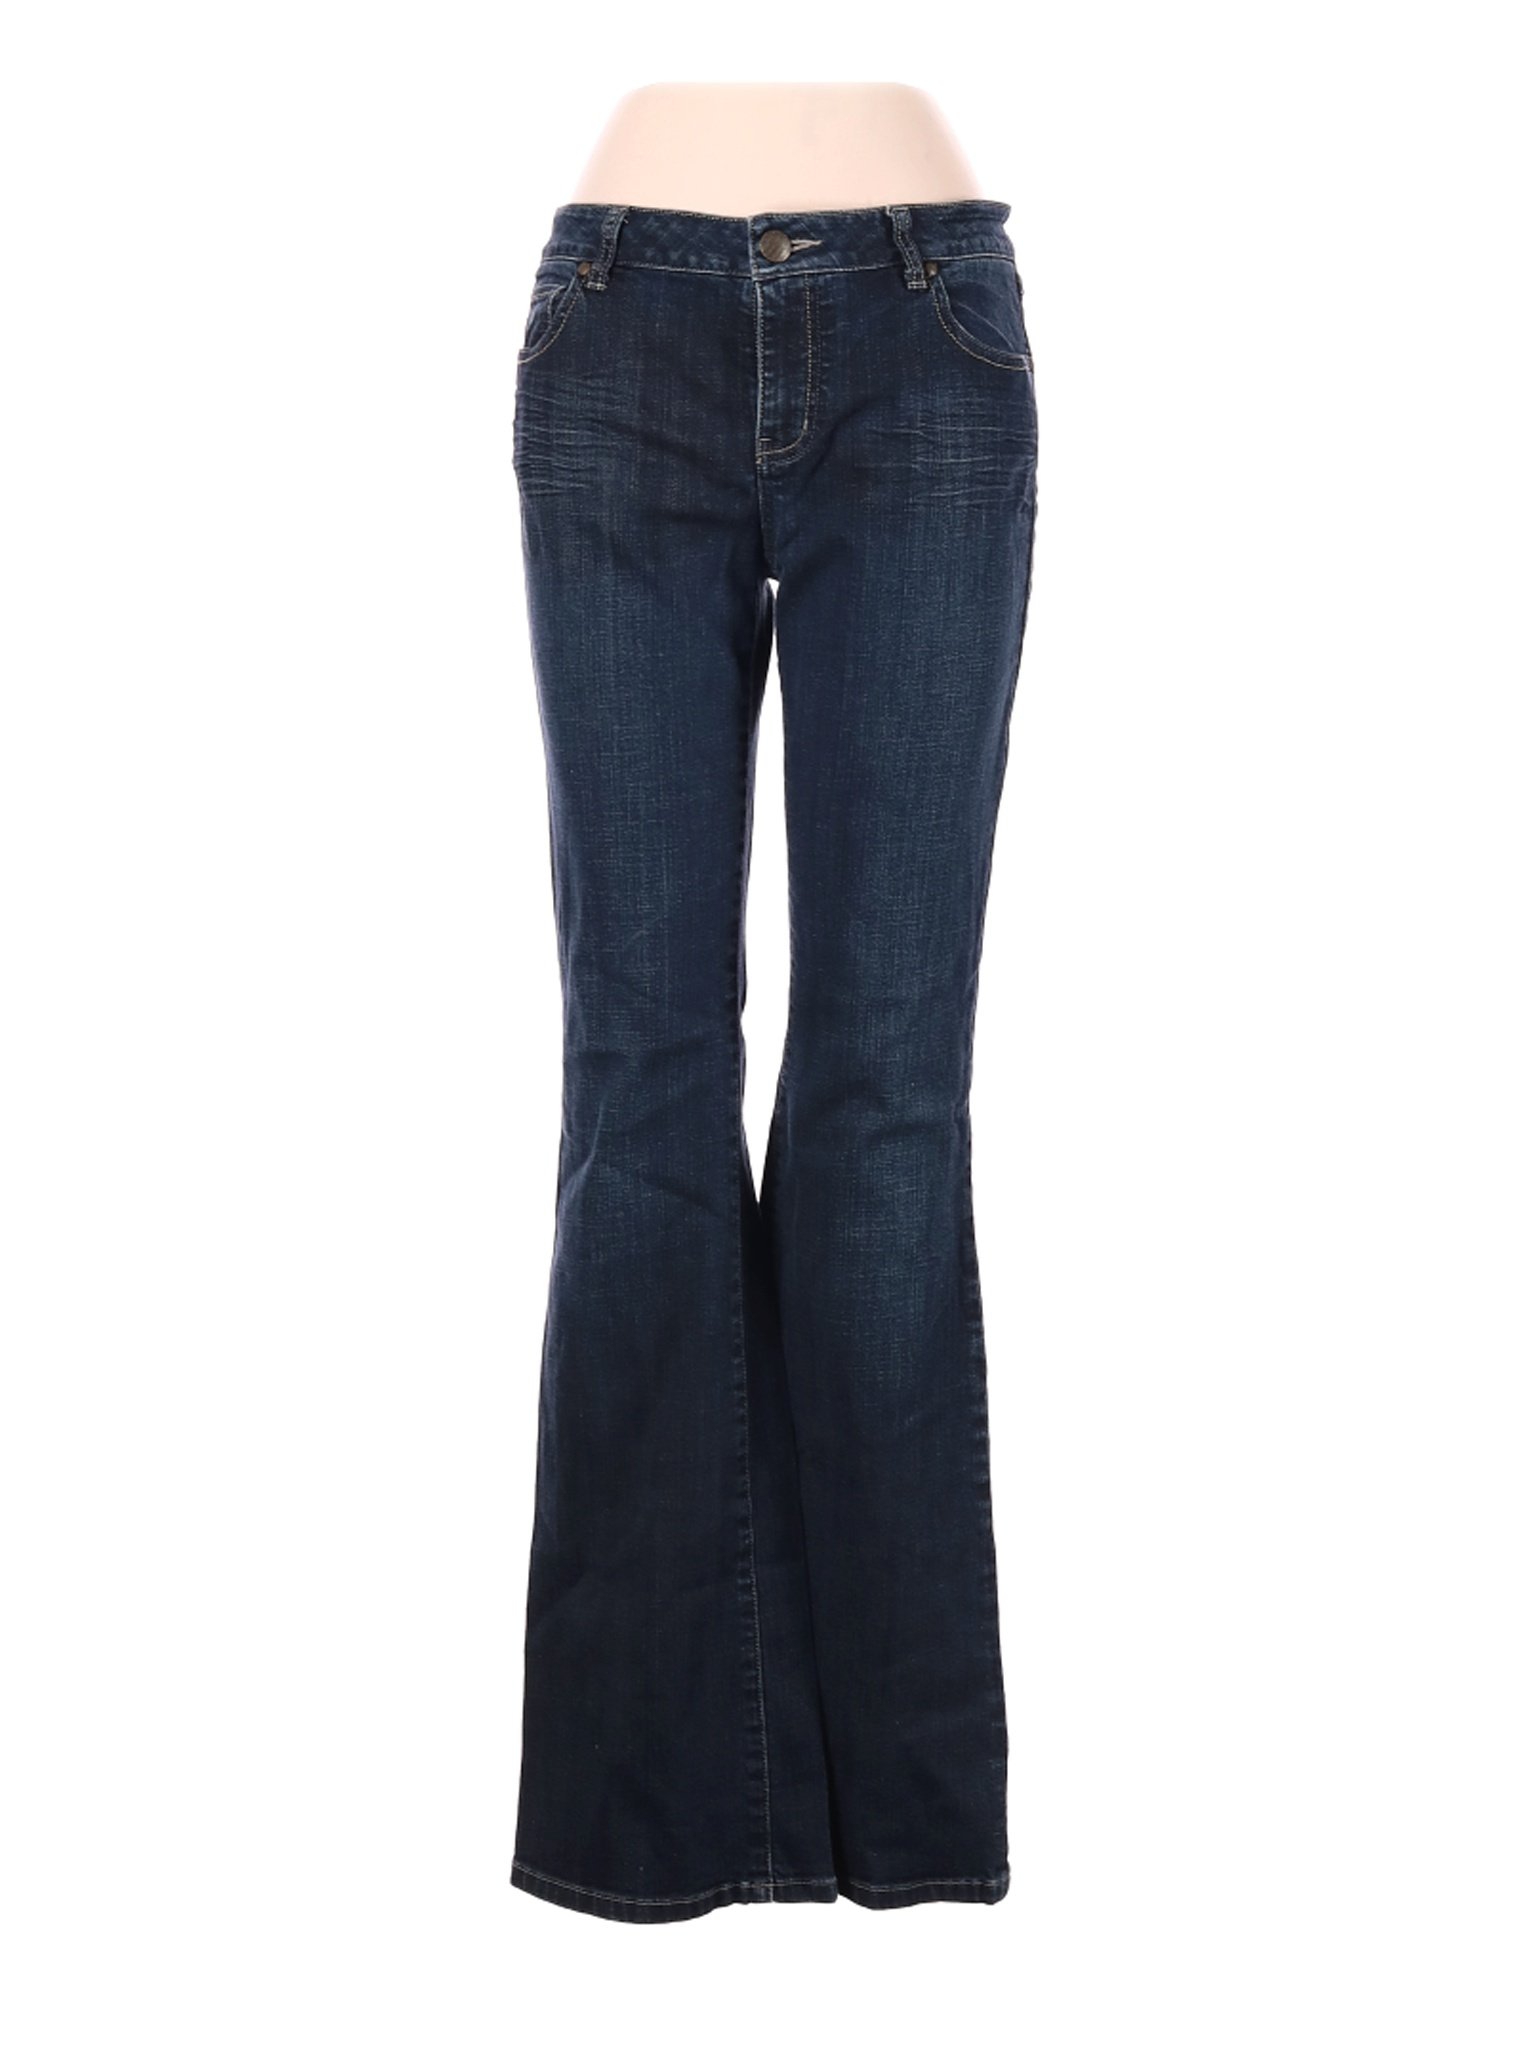 CAbi Women Blue Jeans 8 | eBay